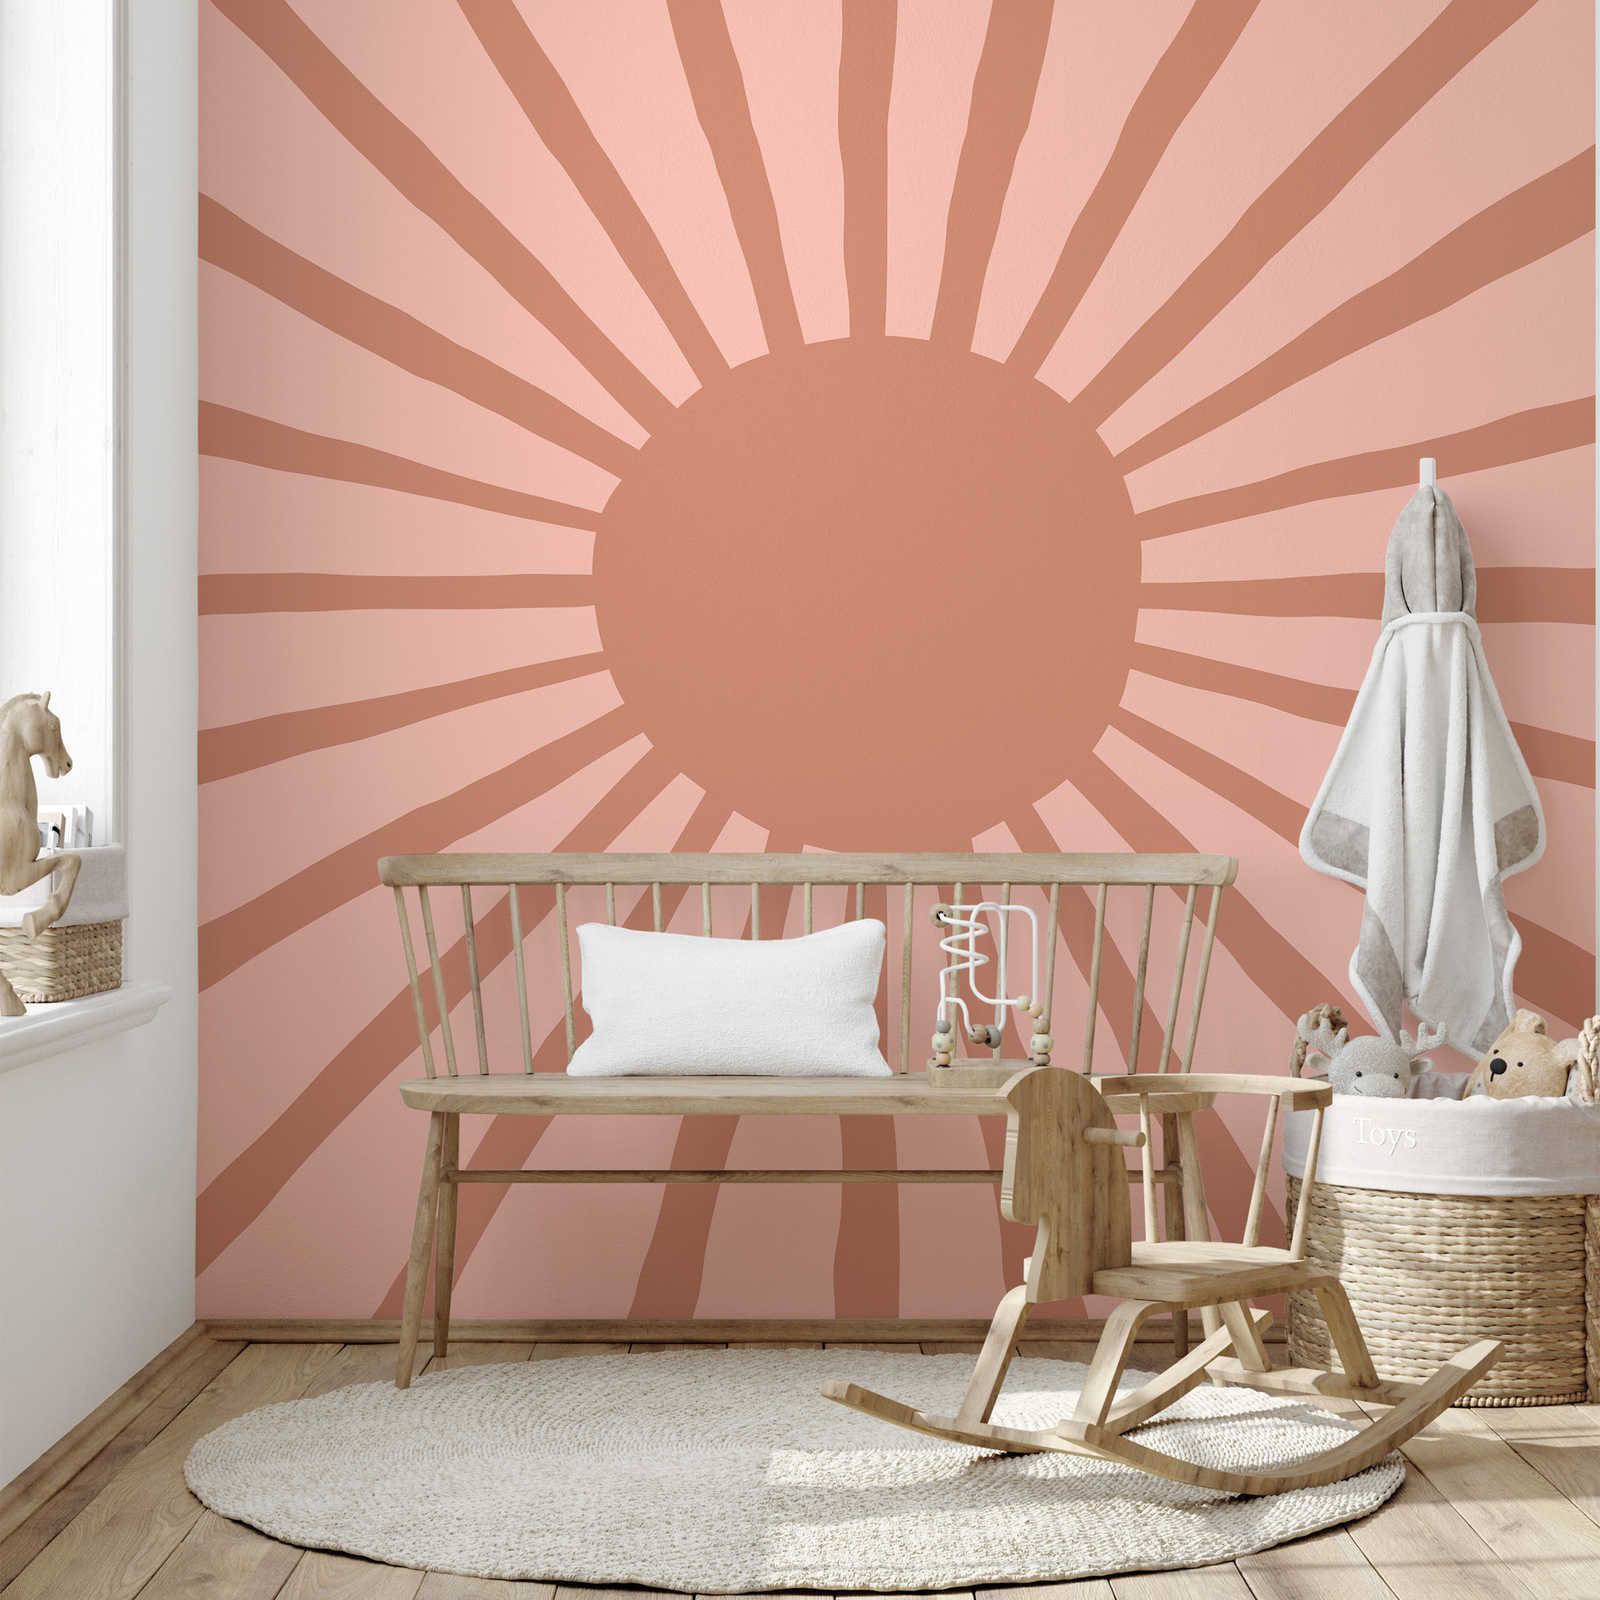 Onderlaag behang met geverfde abstracte zon - glad & mat vlies
